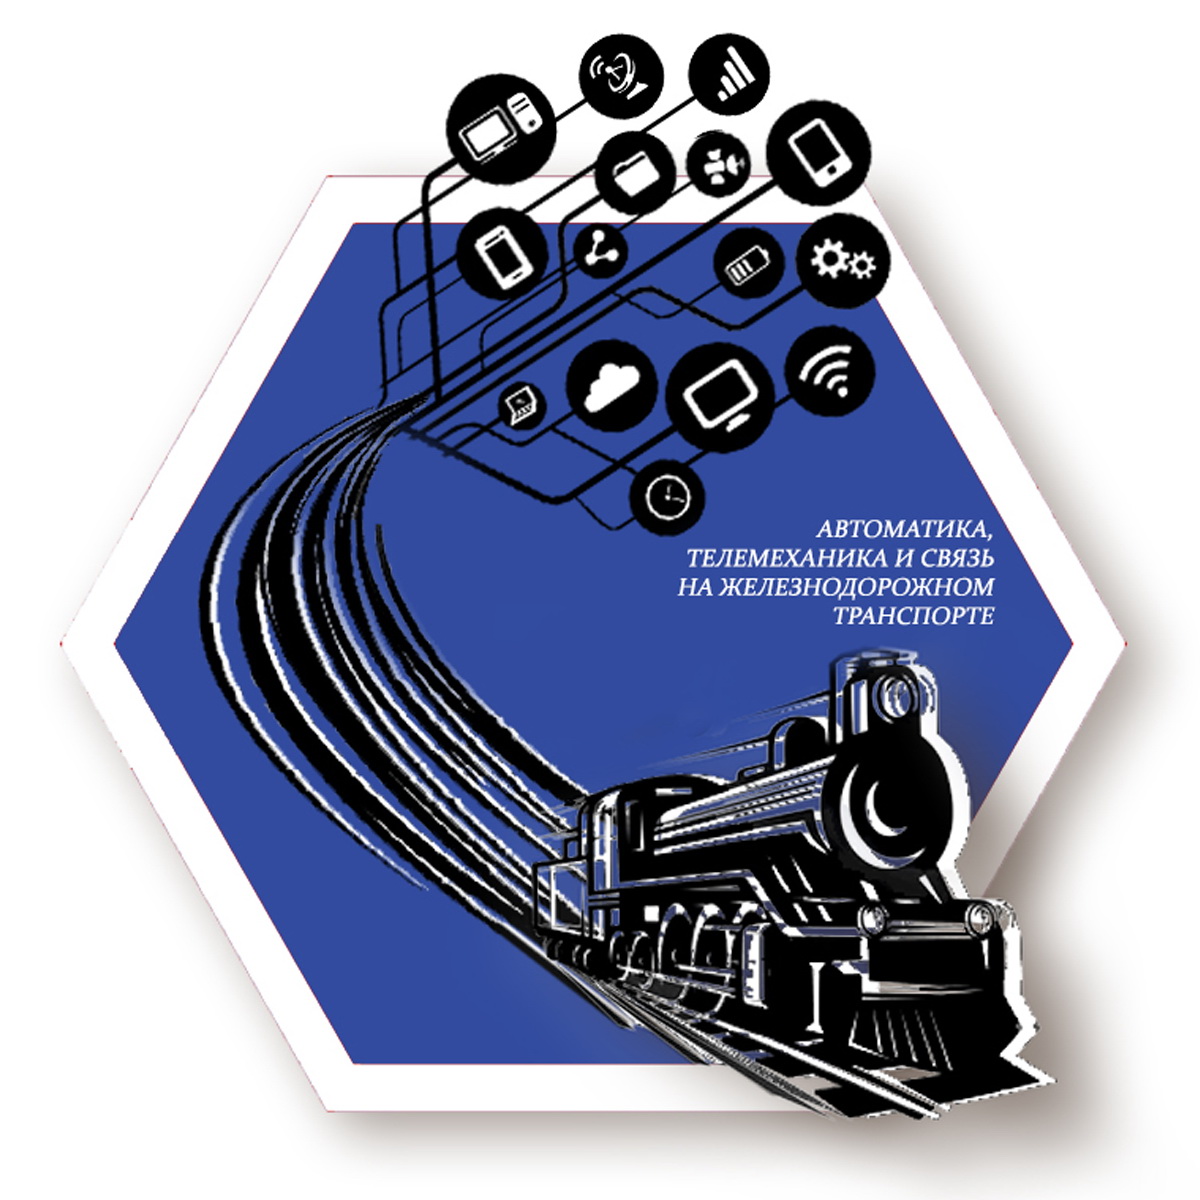 Автоматика на жд. Автоматика и телемеханика на Железнодорожном транспорте. Логотип автоматика и телемеханика. Автоматизация телемеханика на Железнодорожном транспорте. Автоматика телемеханика и связь на транспорте.